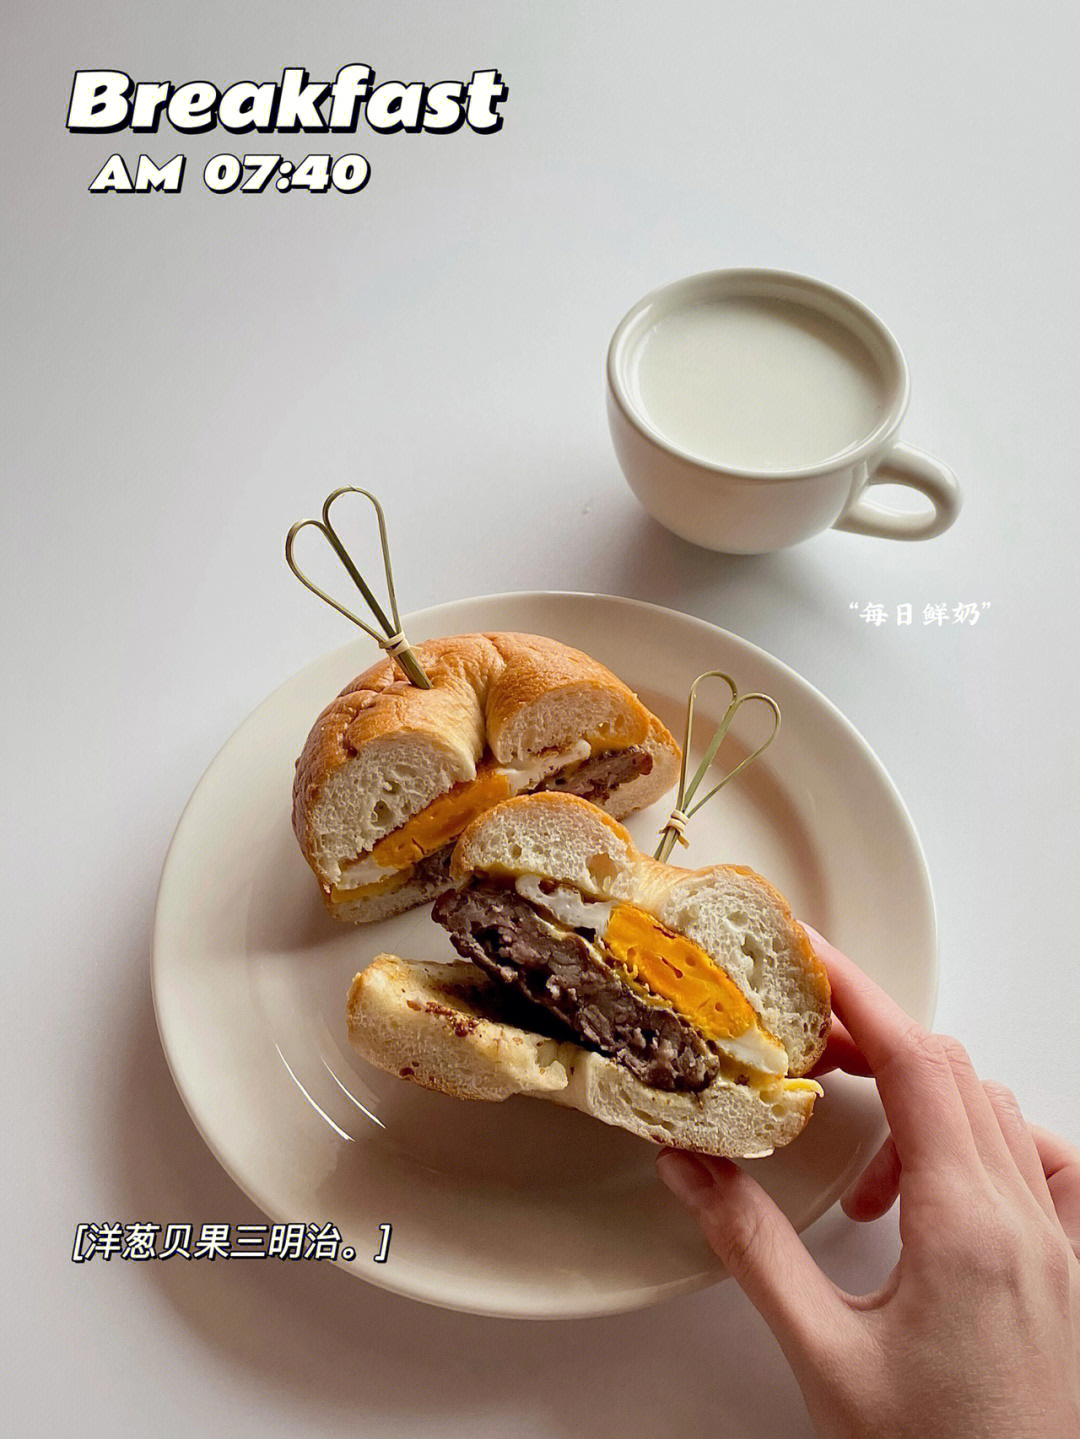 菠萝93午餐:红烧鸭/葱烧鲈鱼/白辣椒炒肉/白灼秋葵/清煮冬苋菜/白